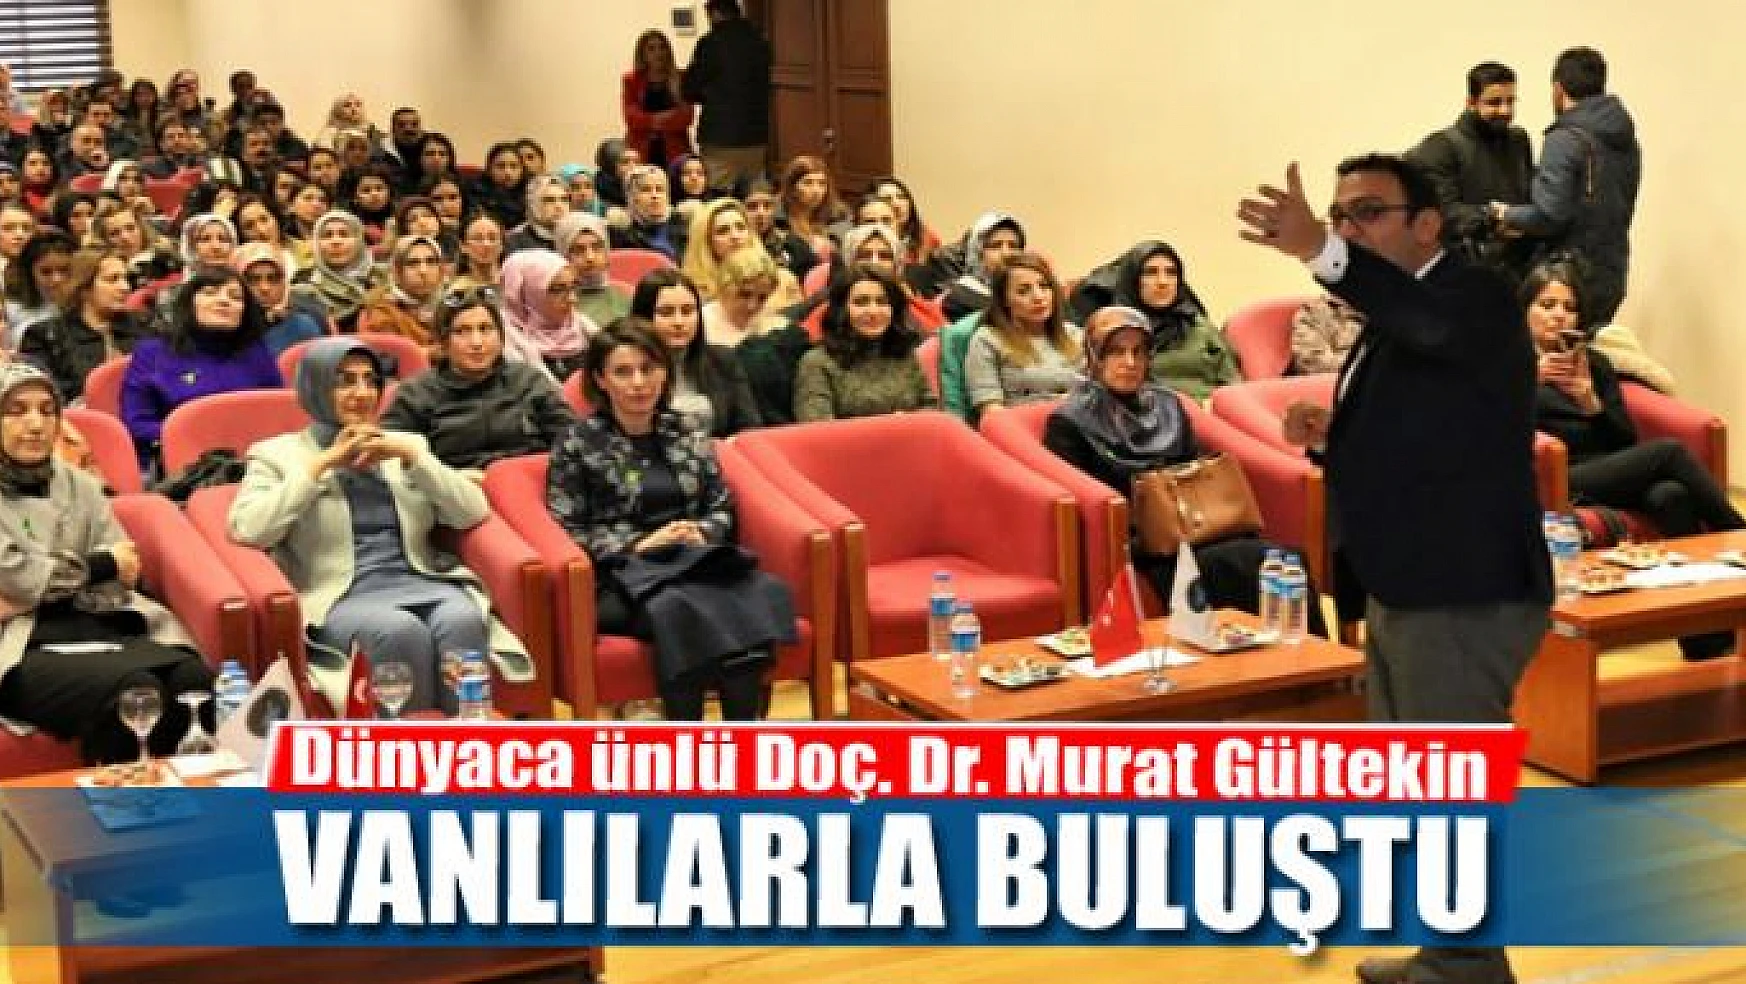 Dünyaca ünlü Doç. Dr. Murat Gültekin Van halkıyla buluştu